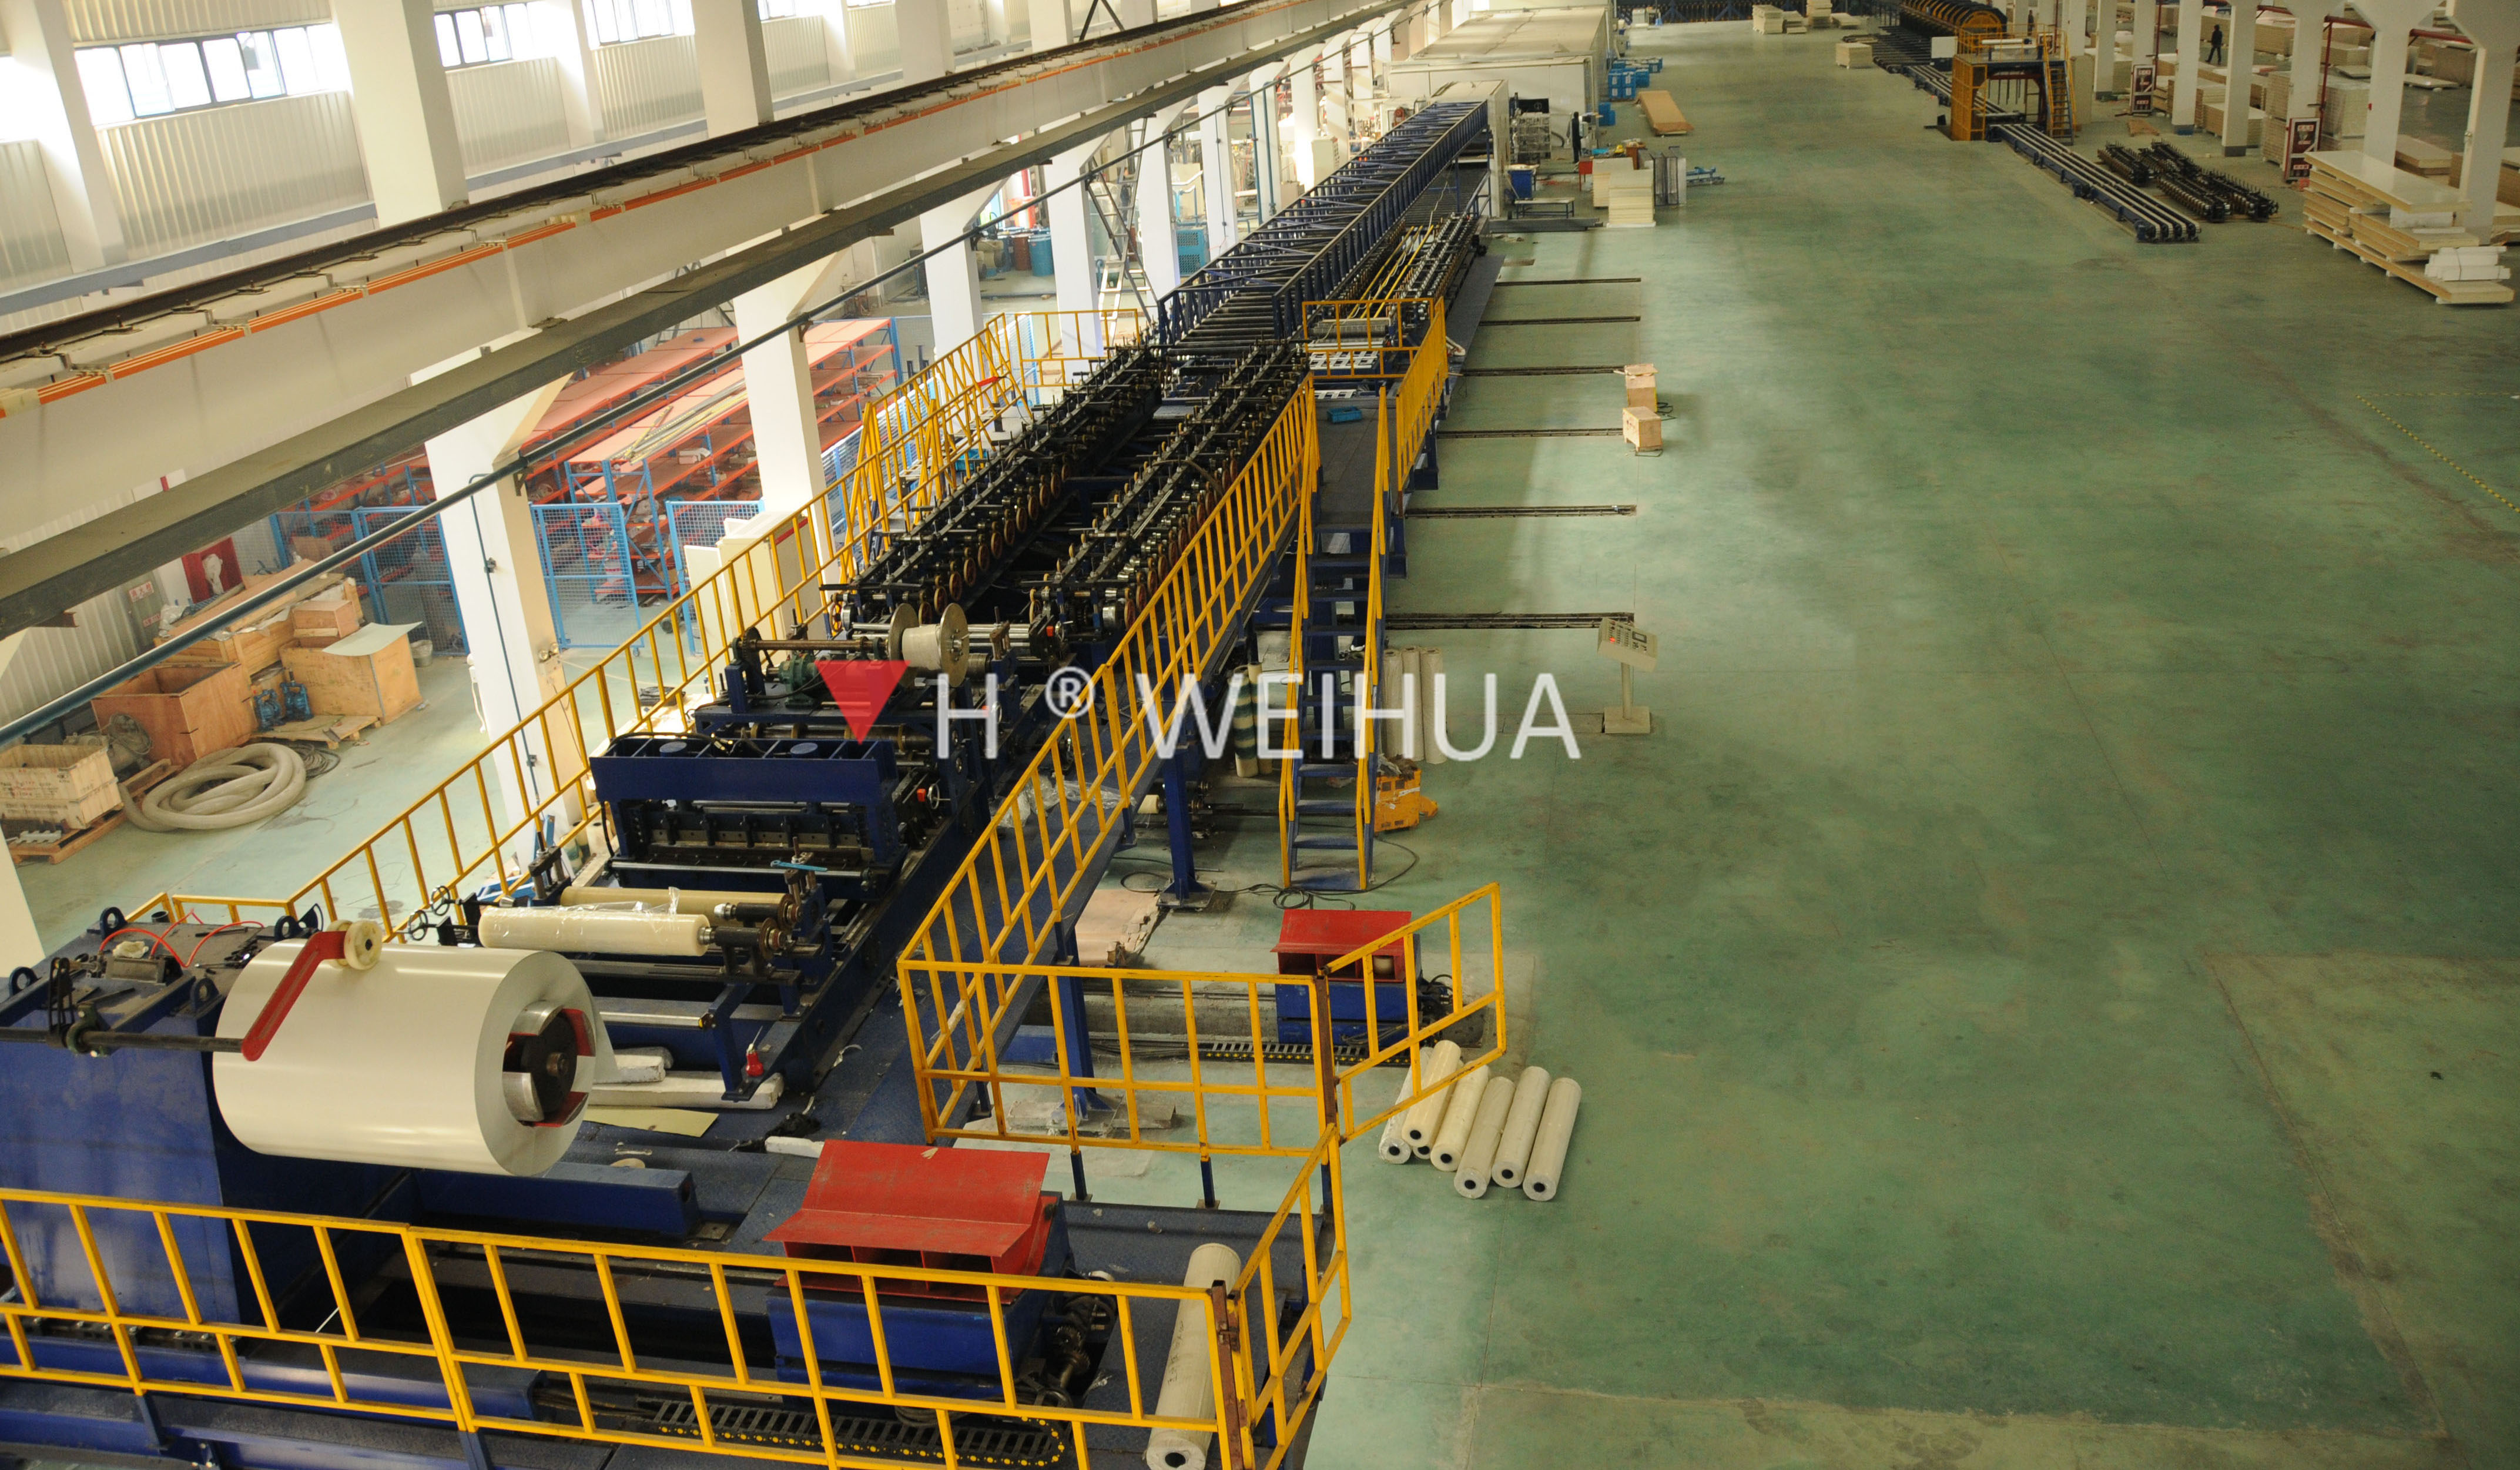 Changzhou Jingxue Refrigeración Equipment Co., Ltd